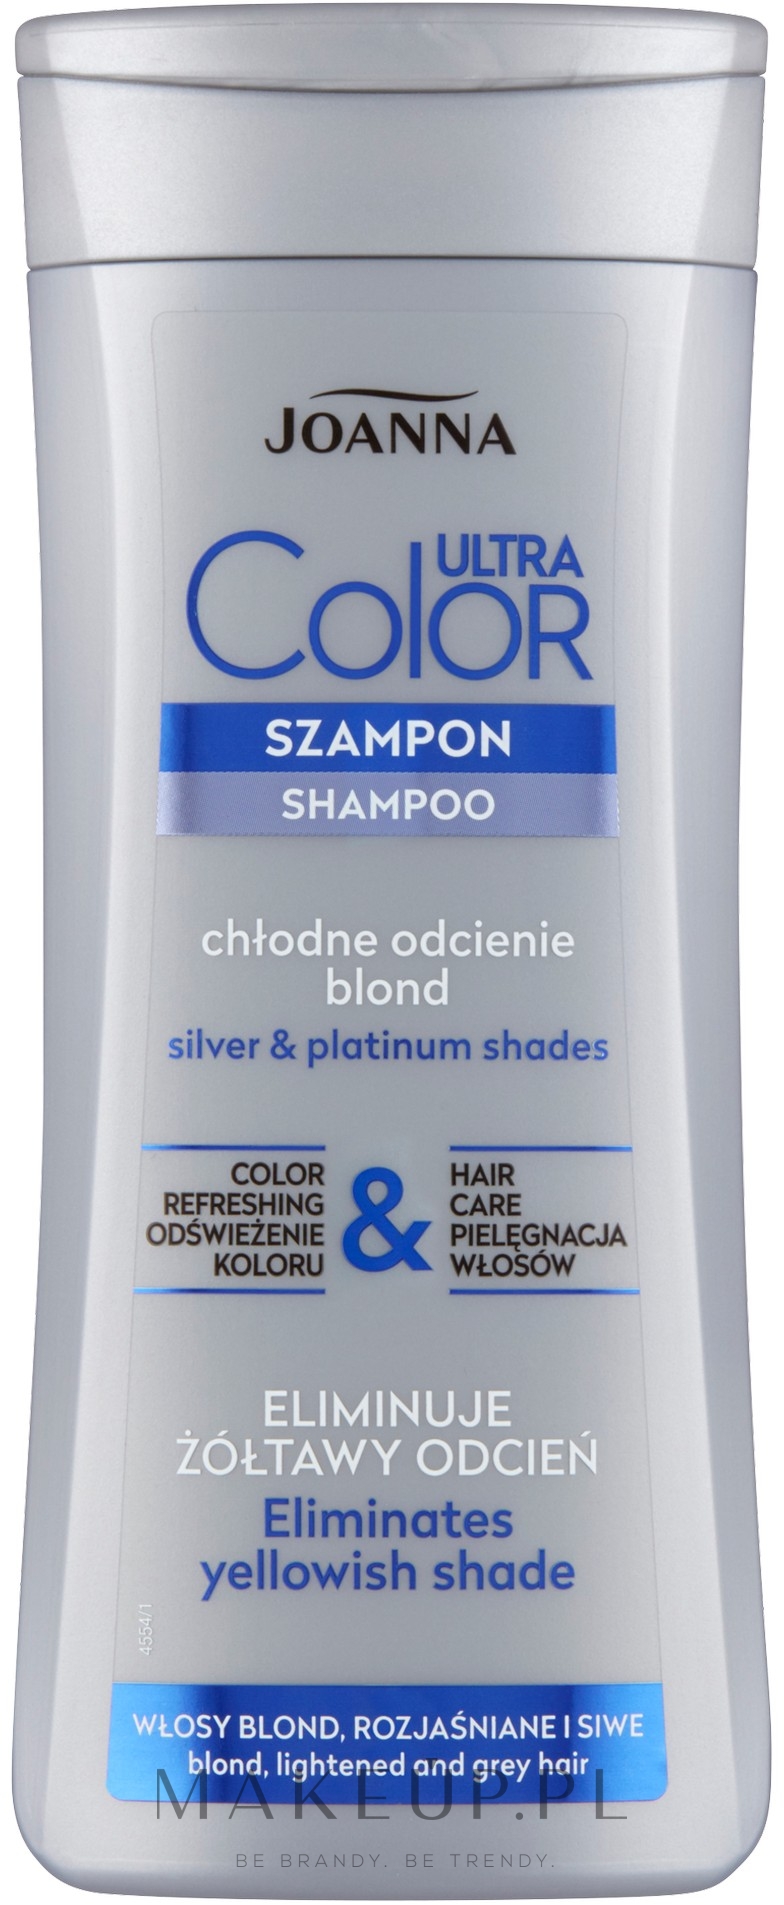 szampon przeciw siwym włosom